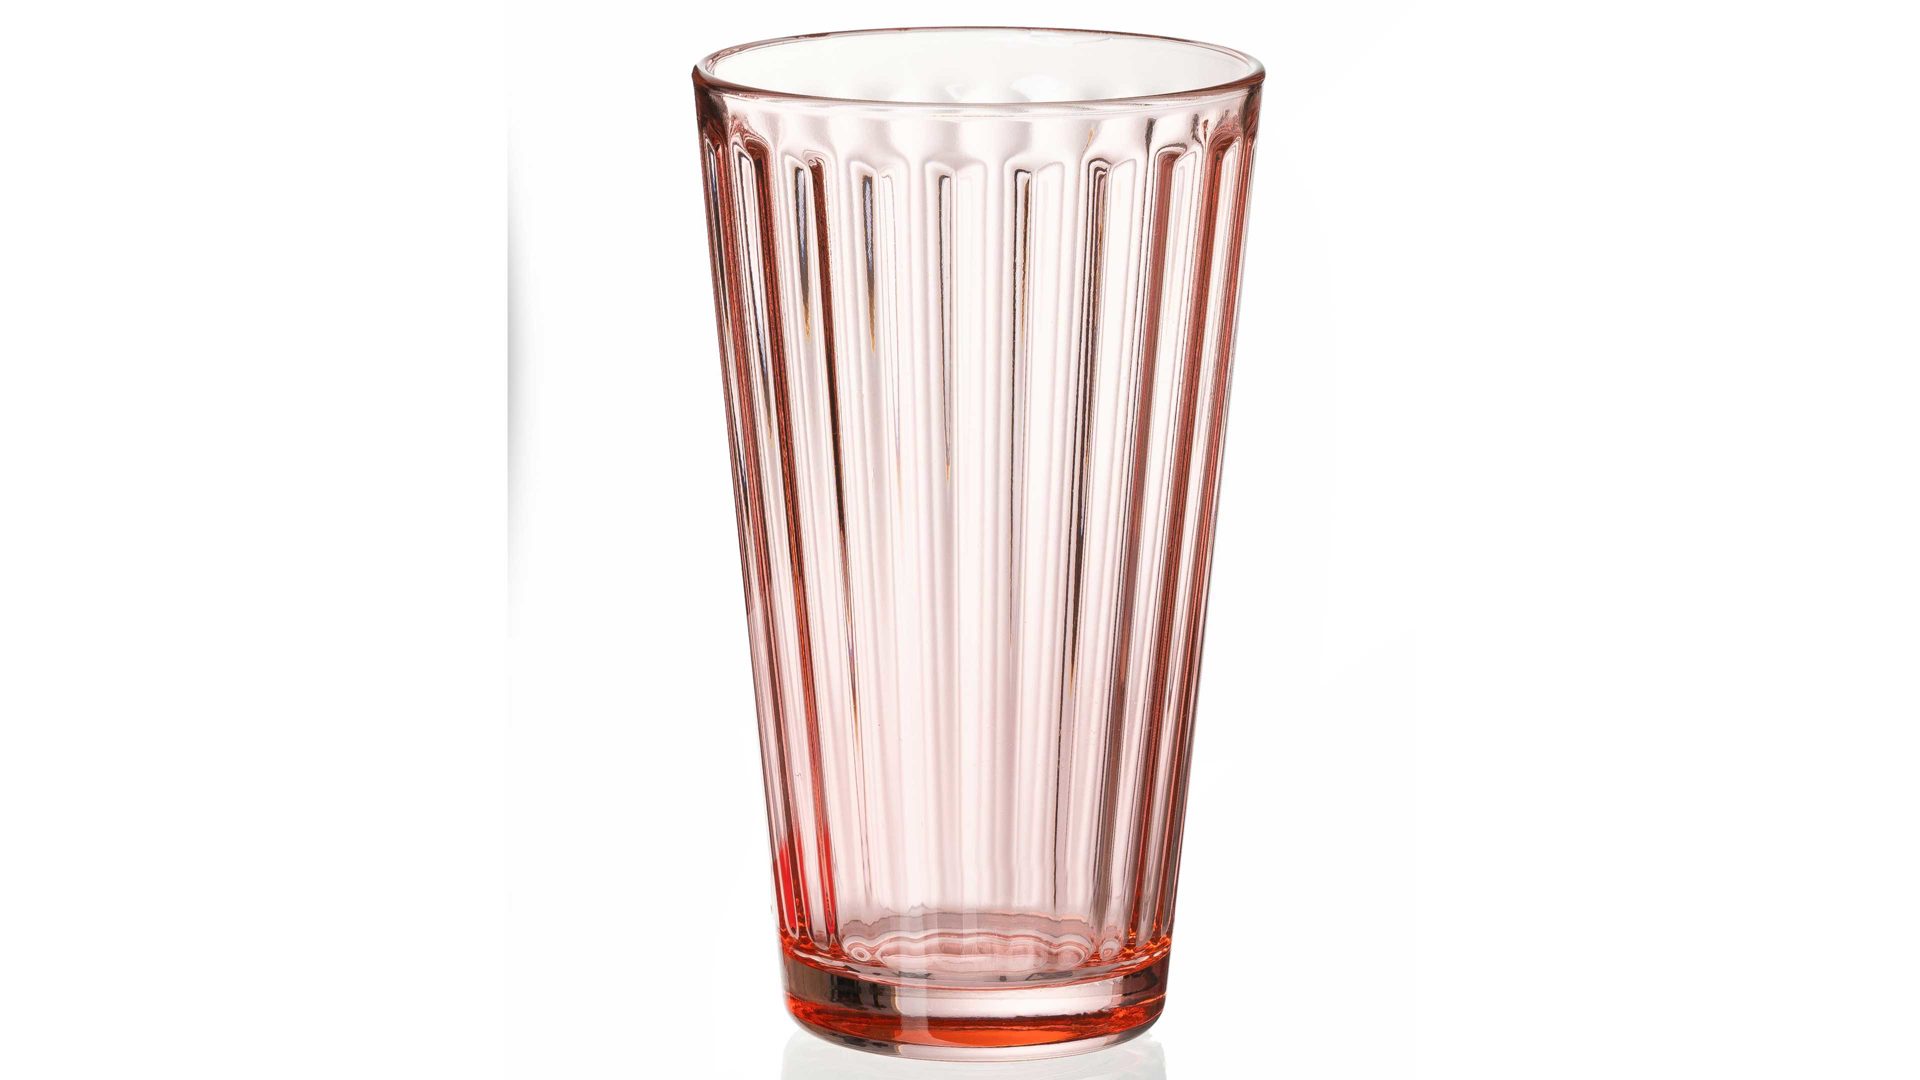 Longdrinkglas Ritzenhoff & breker aus Glas in Pastellfarben Flirt Longdrinkglas Lawe rosefarbenes Riffelglas – ca. 400 ml